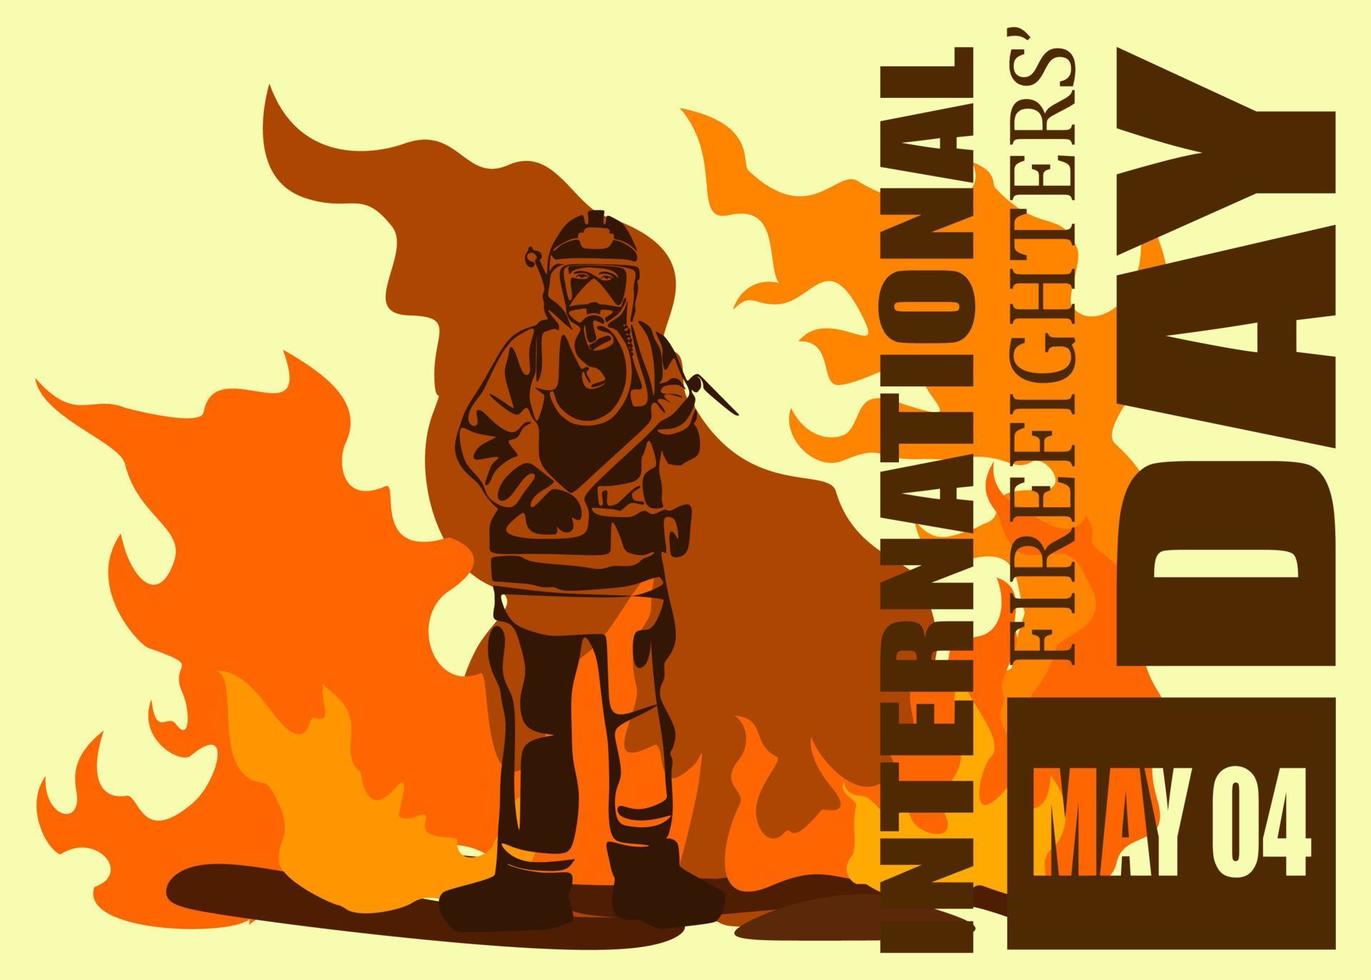 illustrazione vettoriale della siluetta del vigile del fuoco, come banner, poster o modello per la giornata internazionale dei vigili del fuoco.